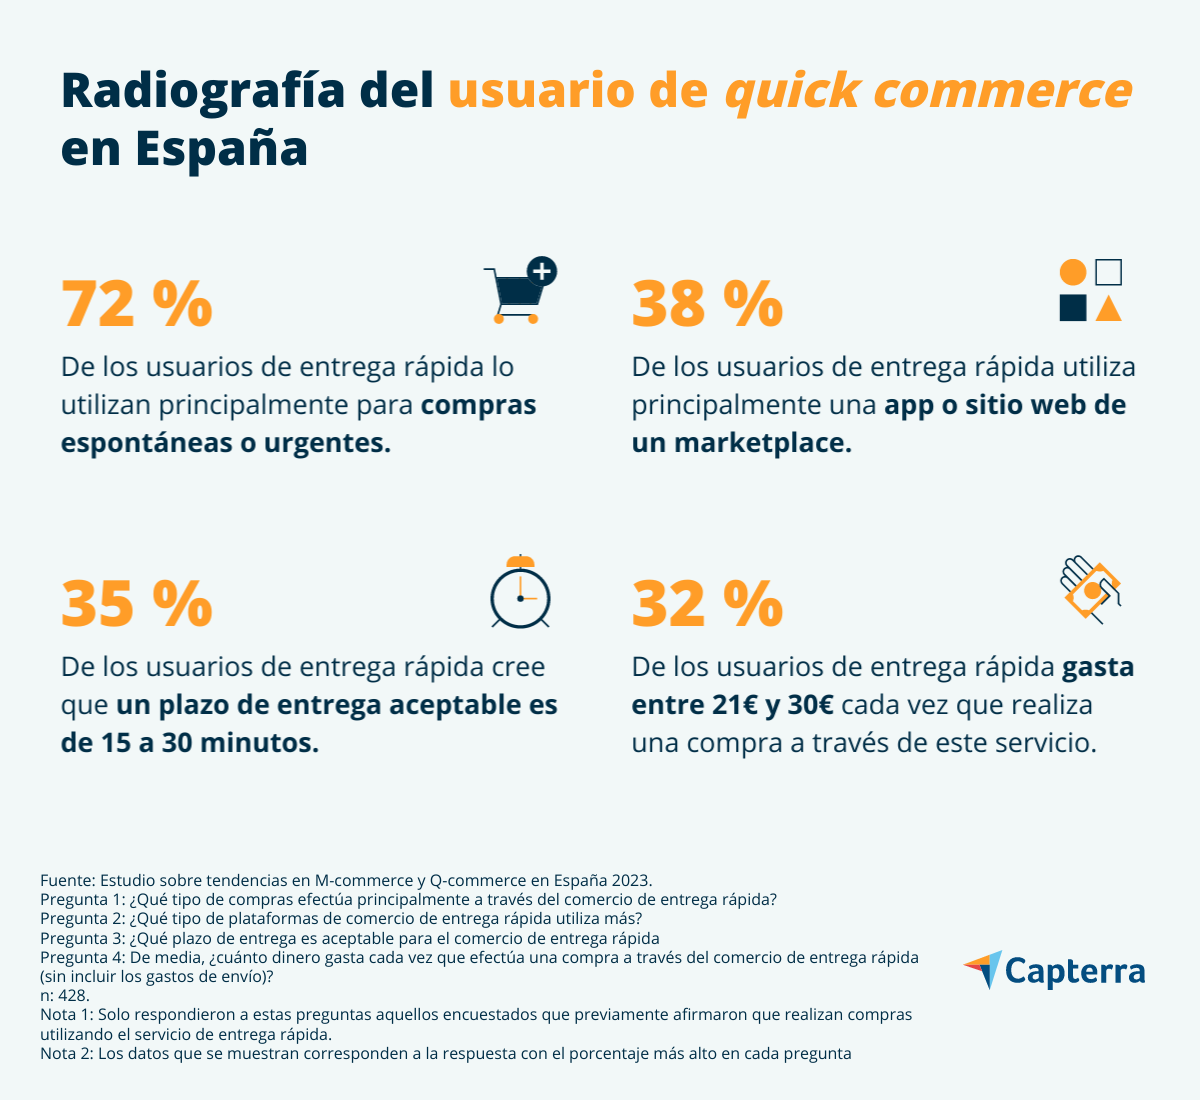 Perfil del usuario de Quick commerce en España